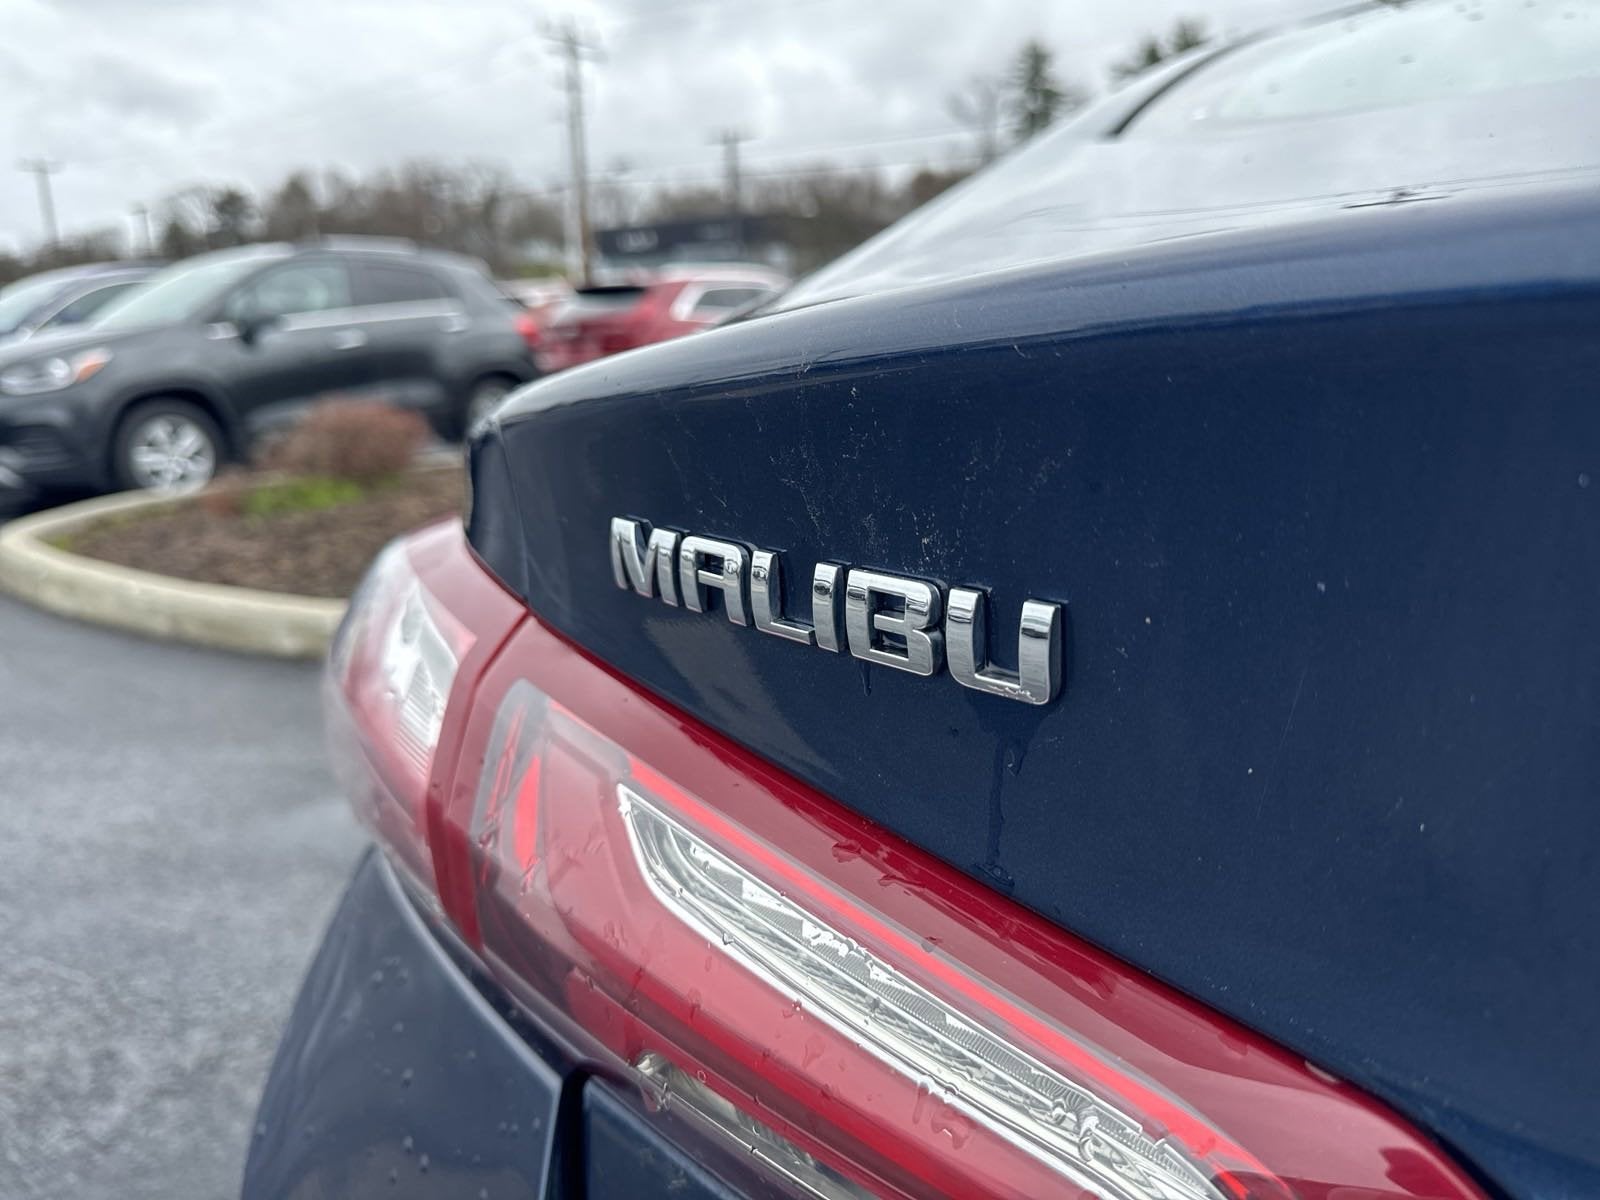 2021 Chevrolet Malibu LT